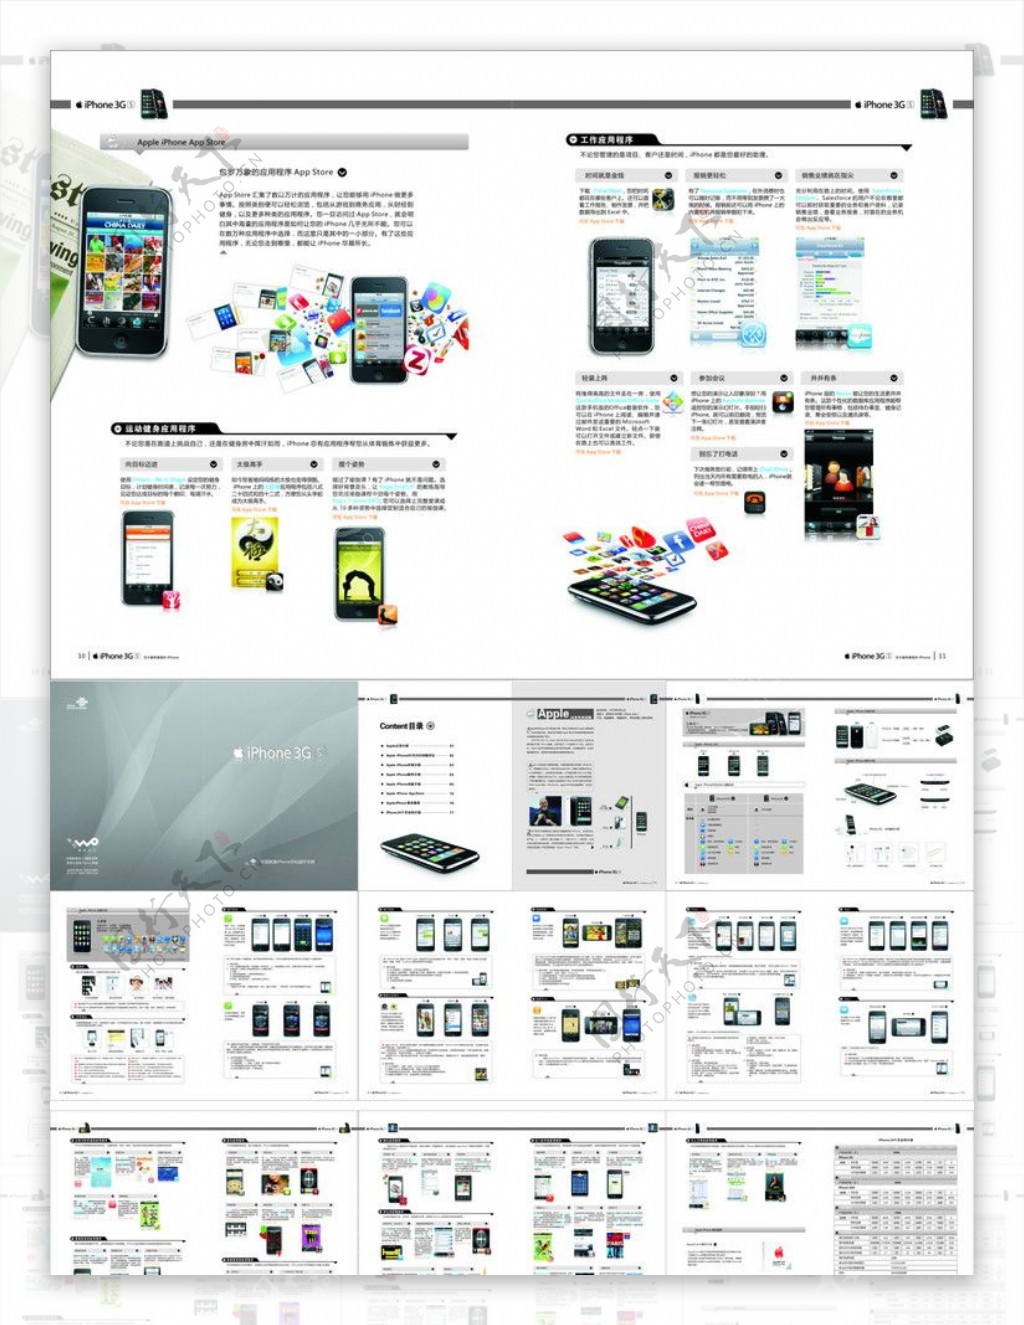 联通iPhone3GS操作手册图片